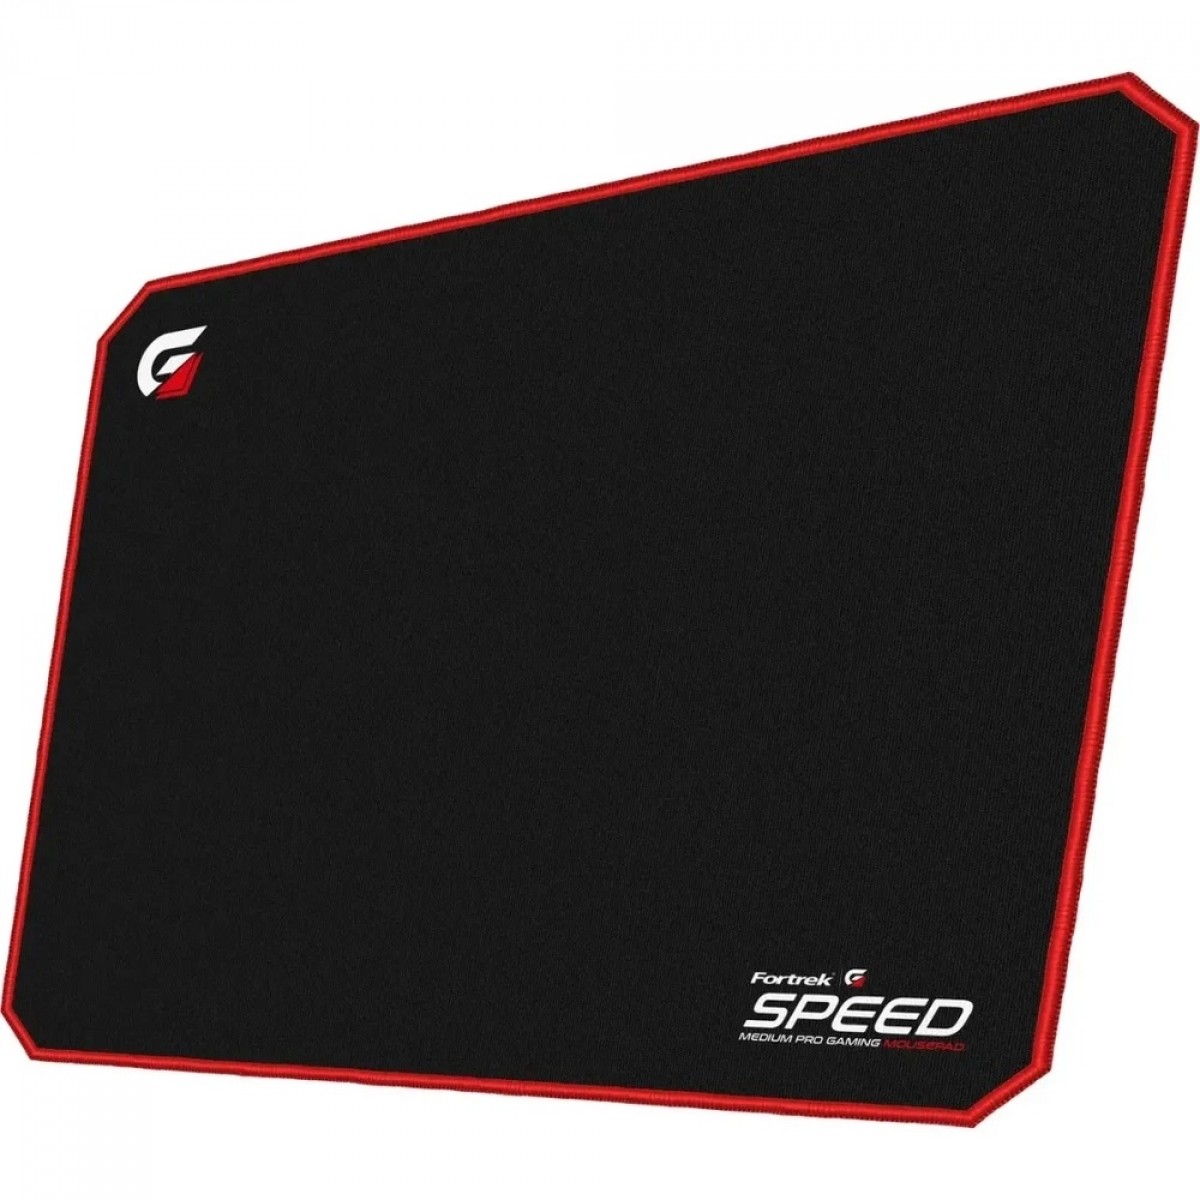 Mouse Pad Gamer Fortrek Speed MPG101 VM, Médio (320x240mm), Preto/Vermelho - 72692